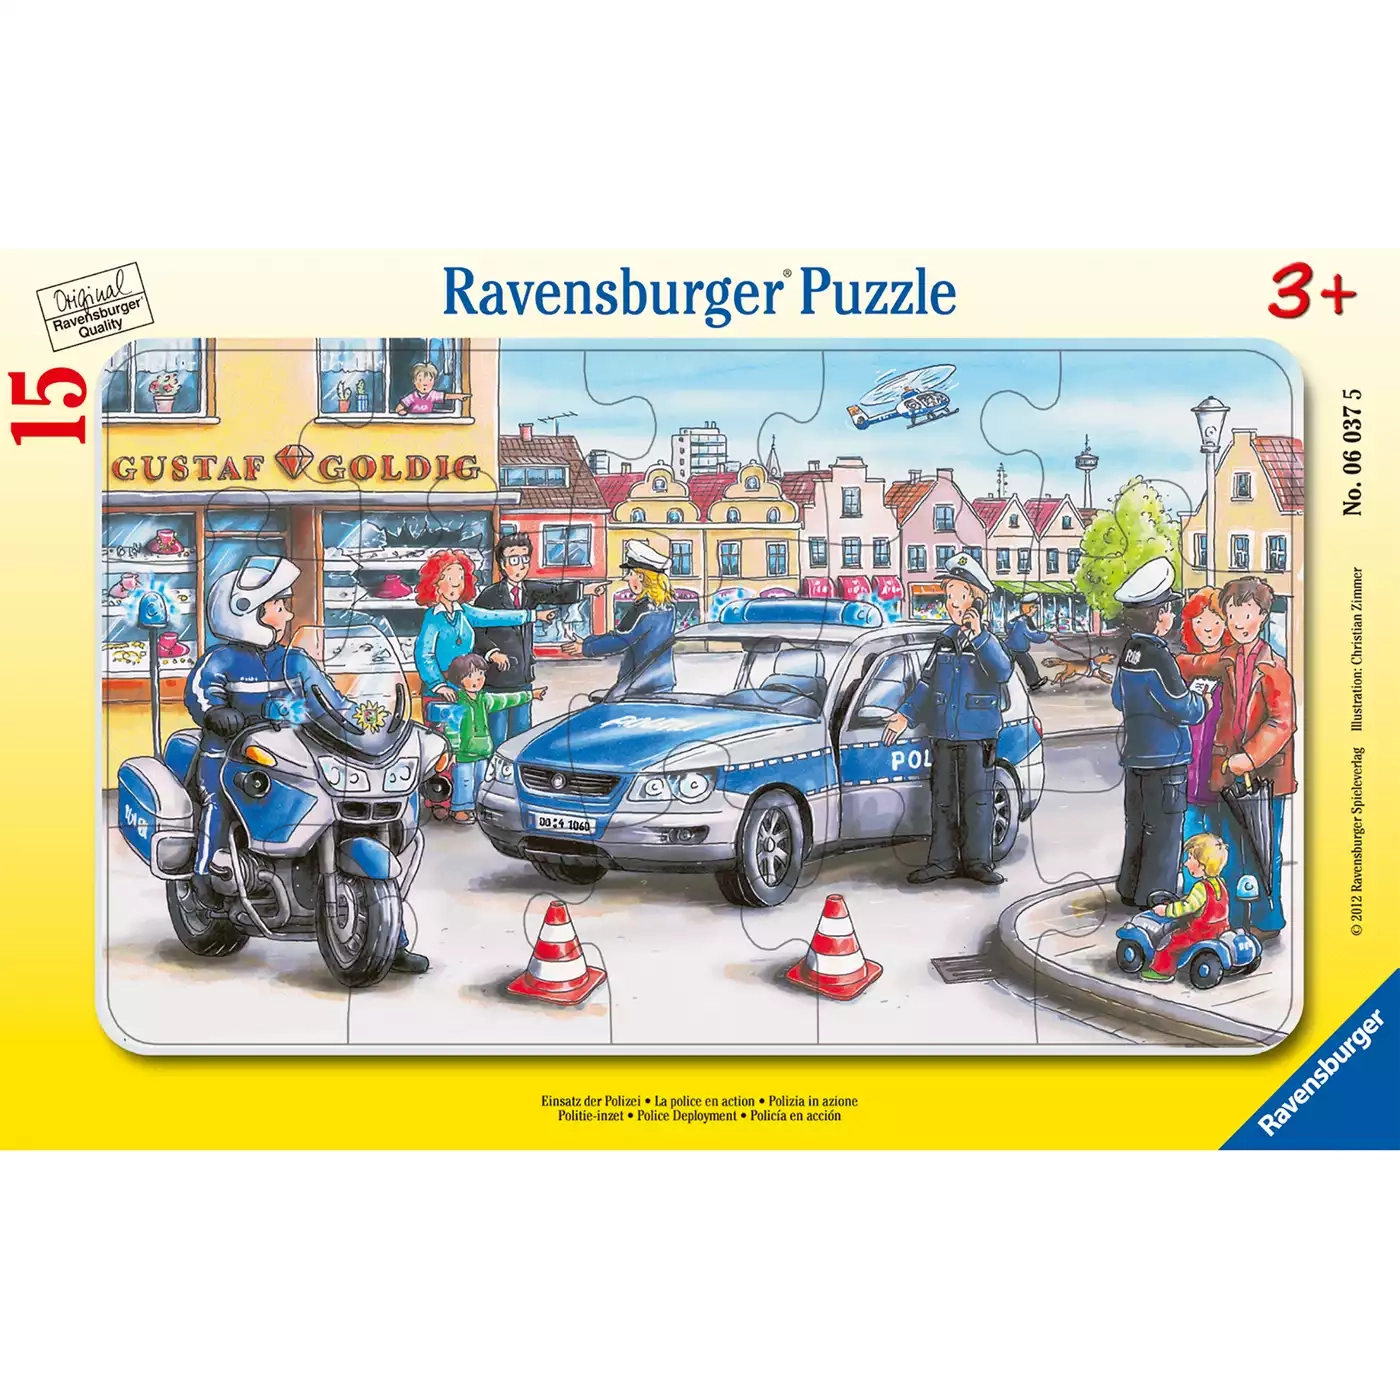 Kinderpuzzle Einsatz der Polizei Ravensburger 2000555031809 3